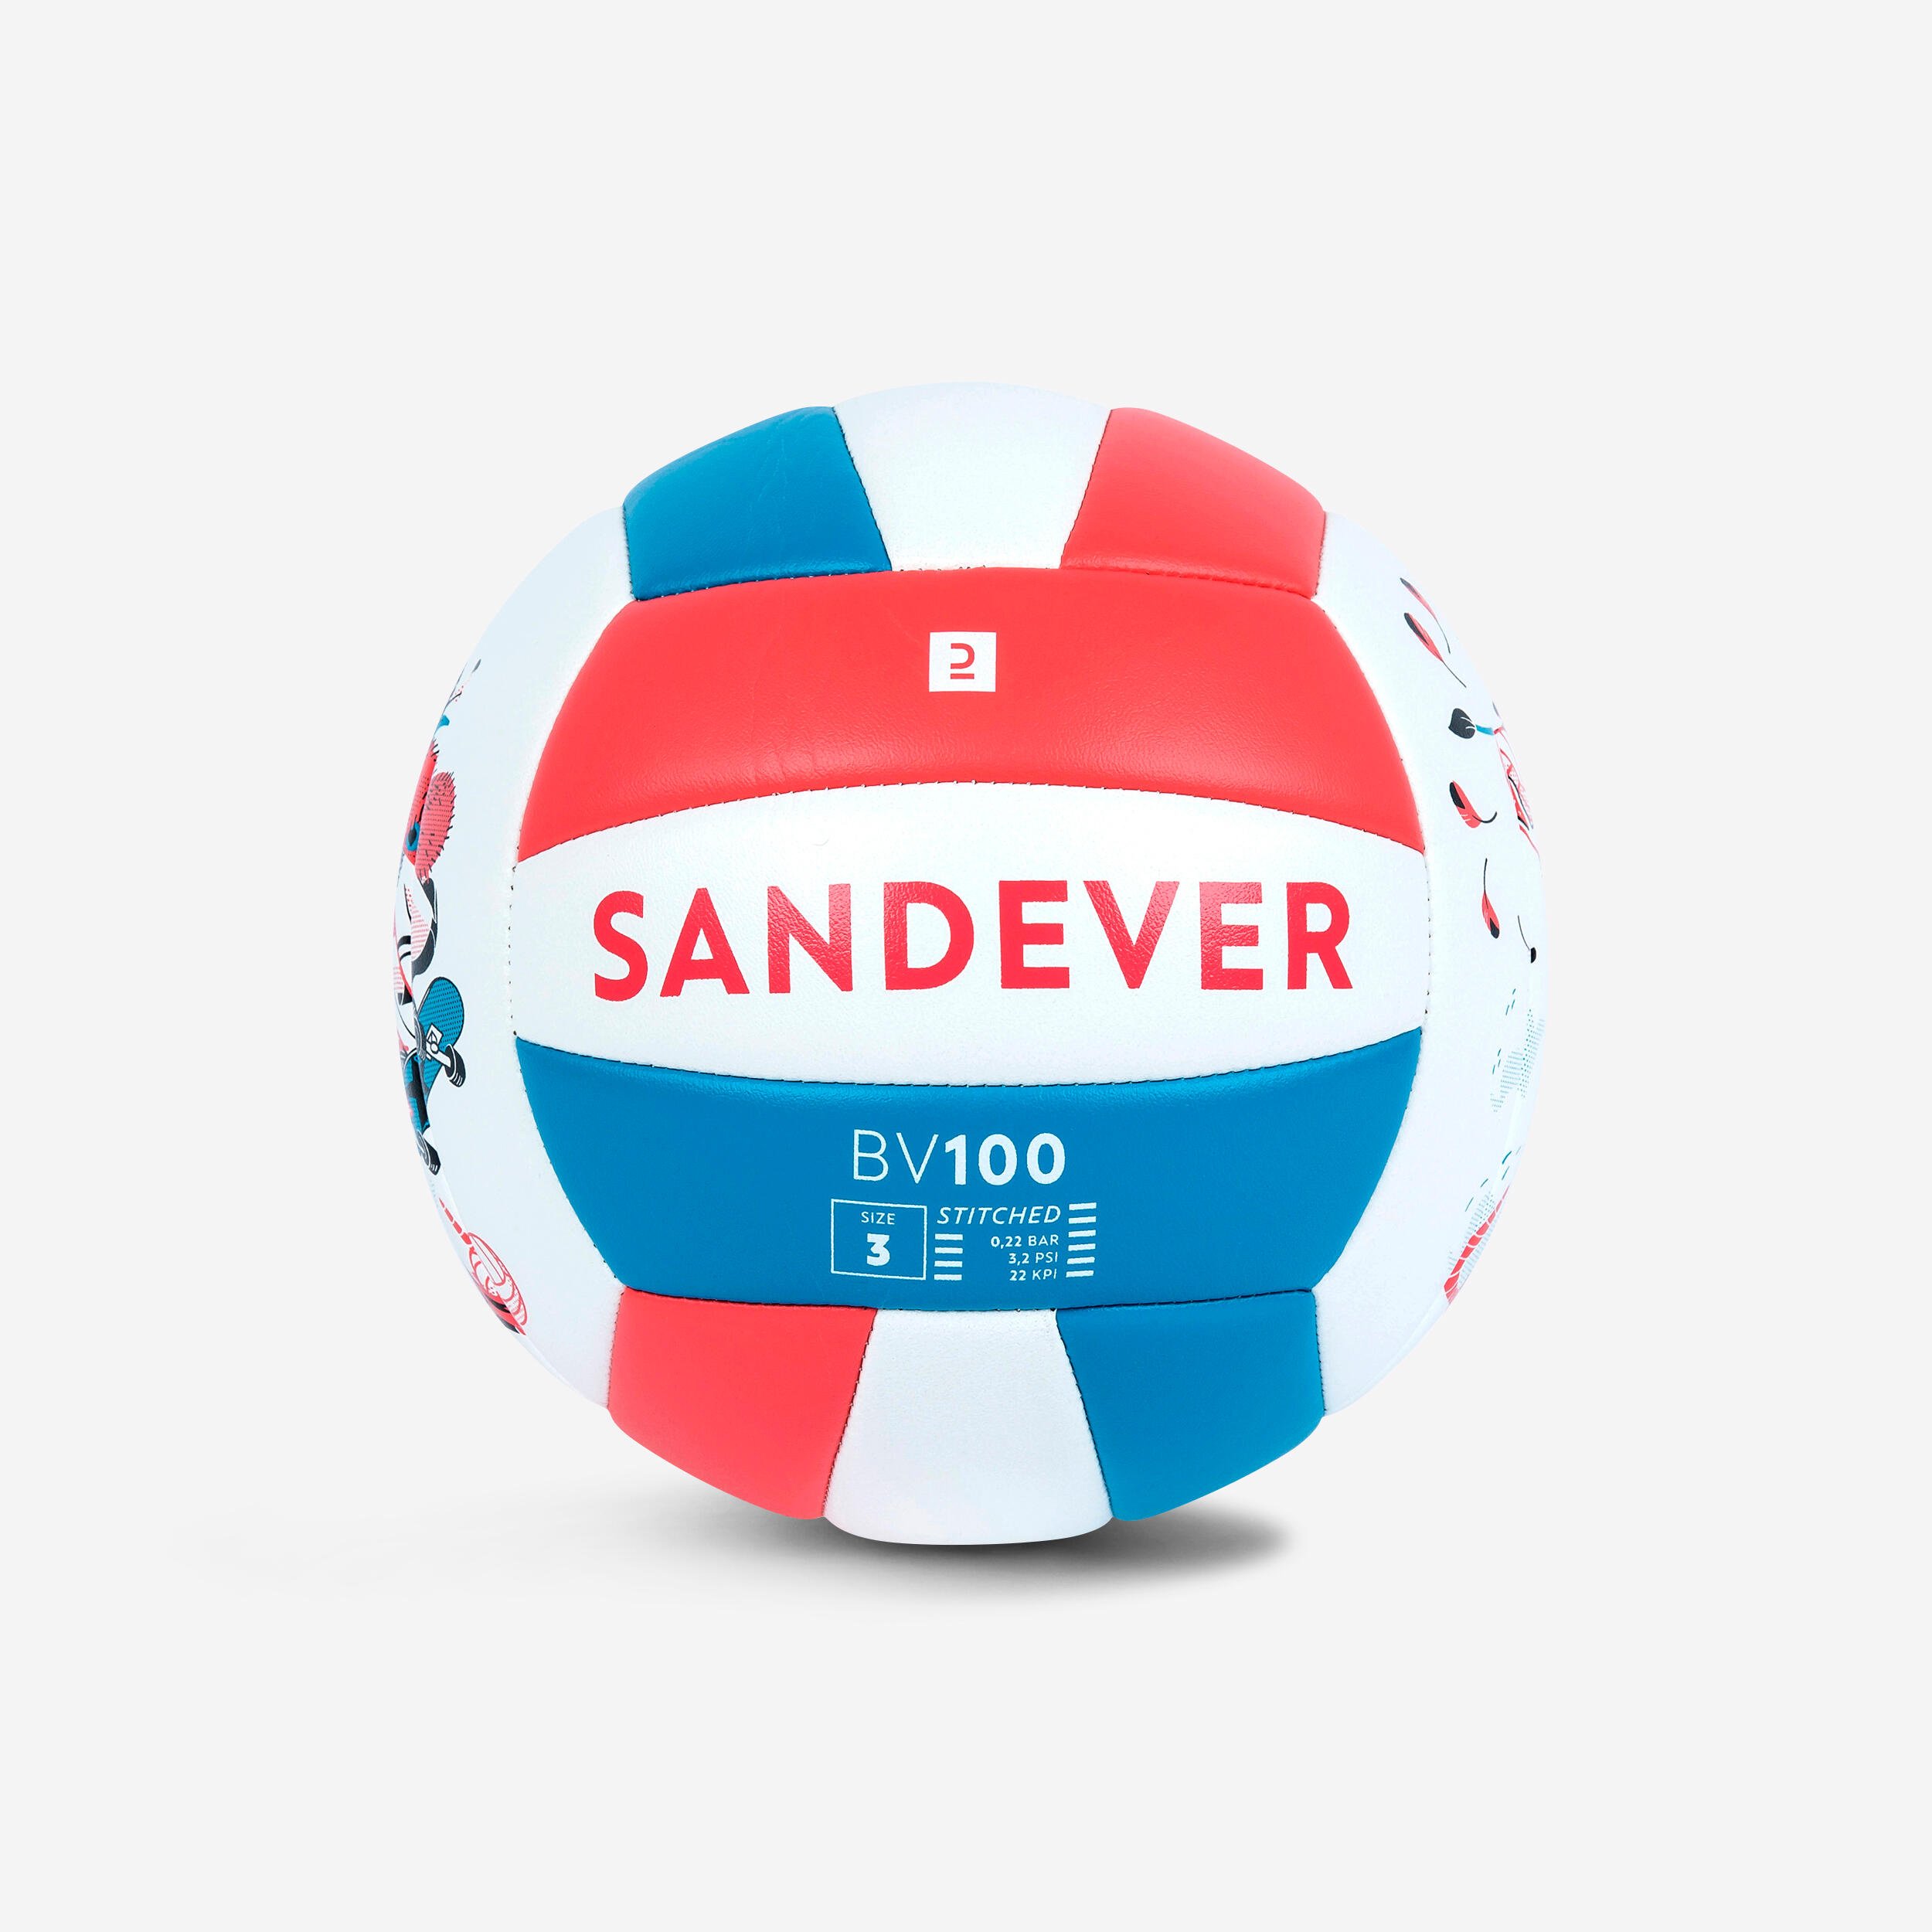 palloni uso ricreativo per adulti bambini Soft Touch Palla pallone da pallavolo beach volley volley ball per interni esterni 